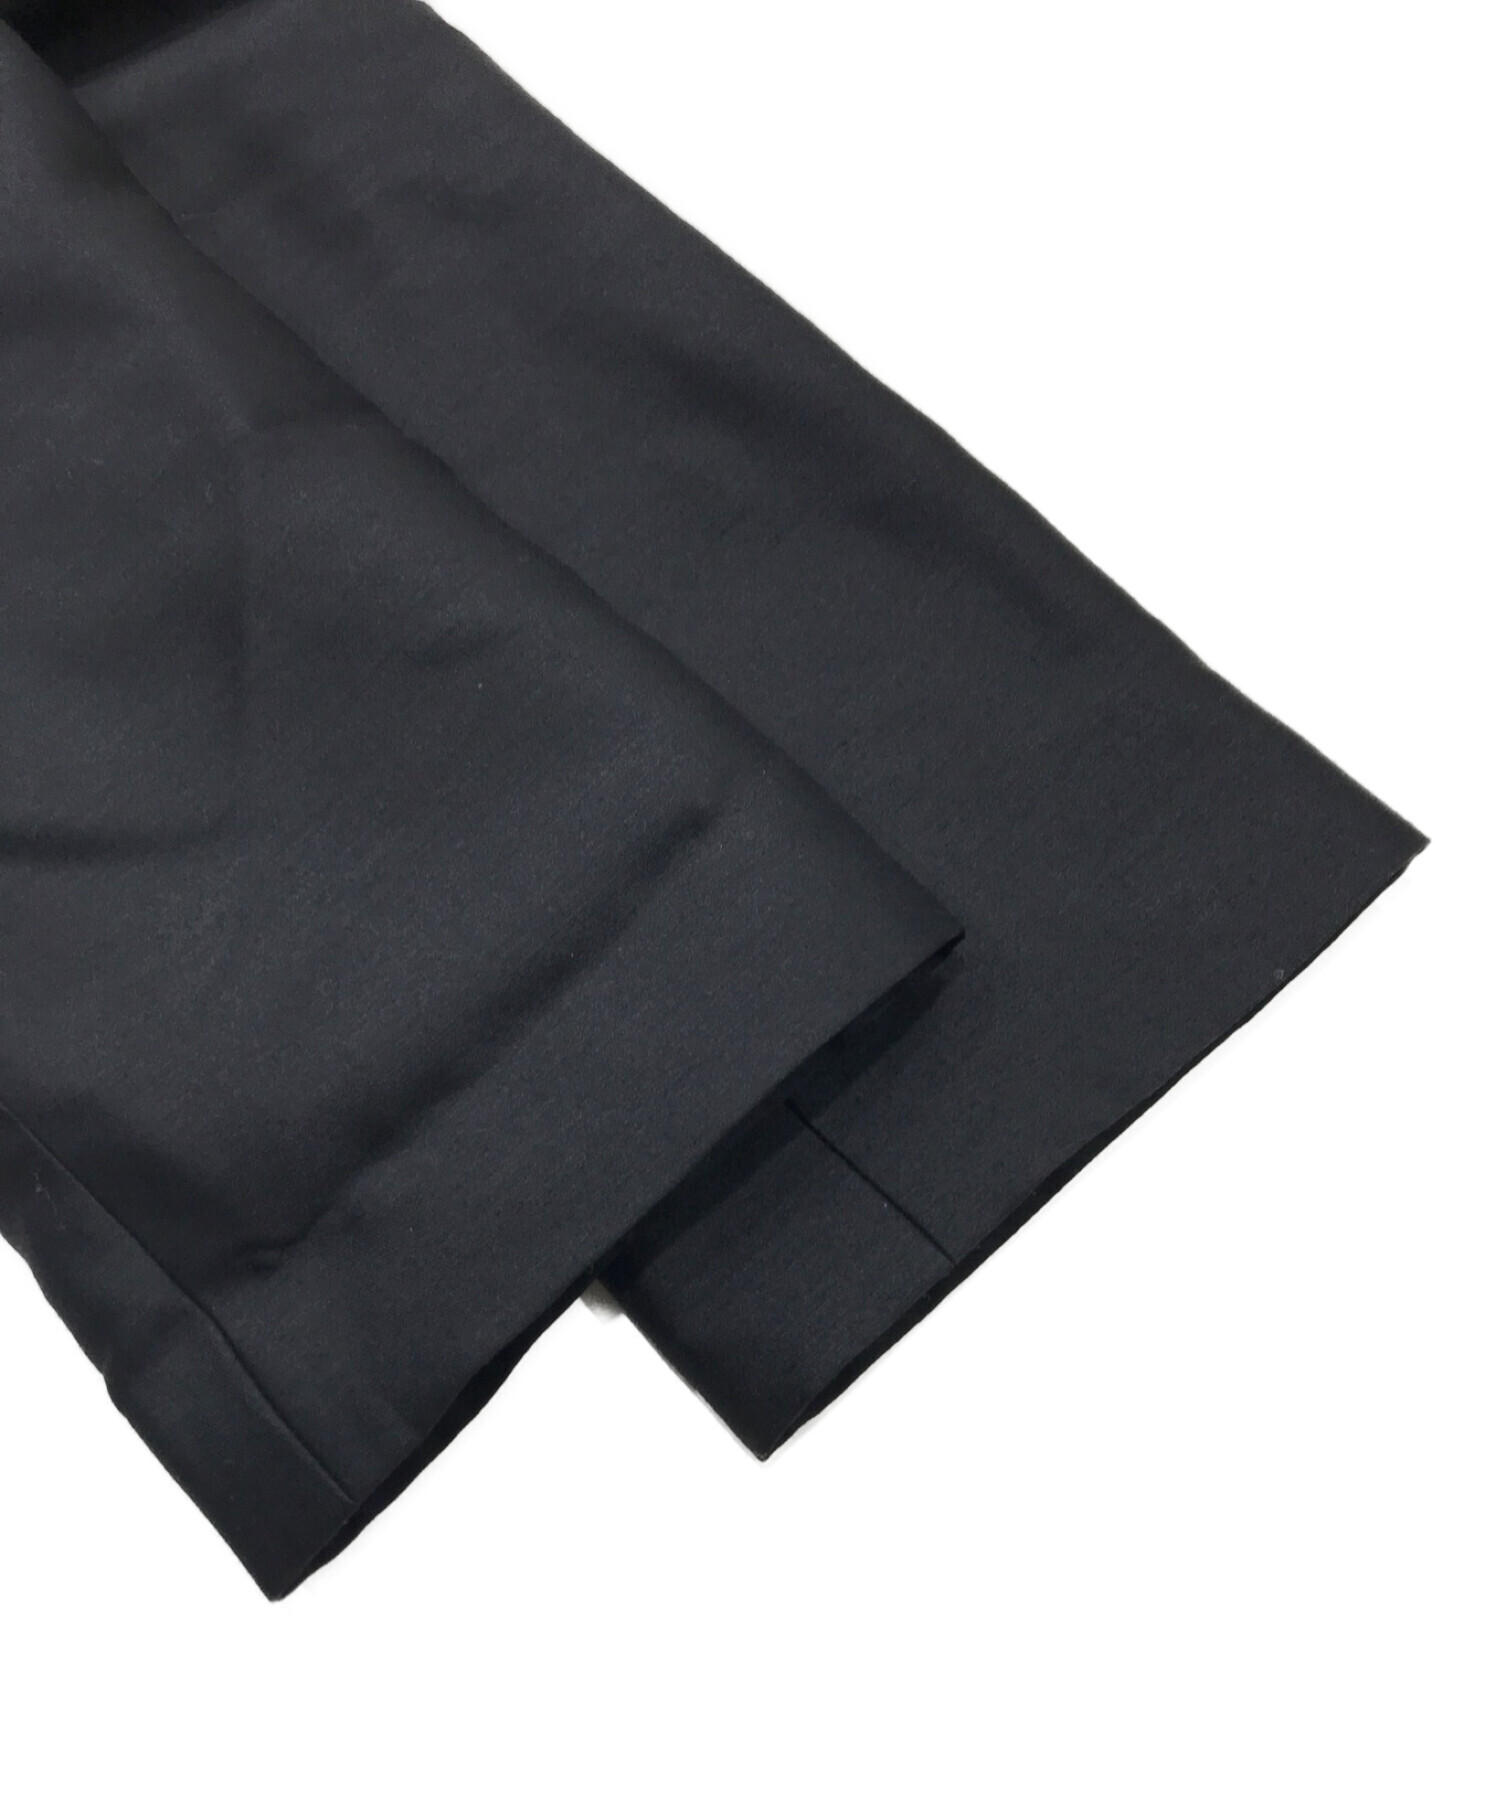 cccmalie (シーマリー) シルクウールノーカラージャケット ブラック サイズ:38